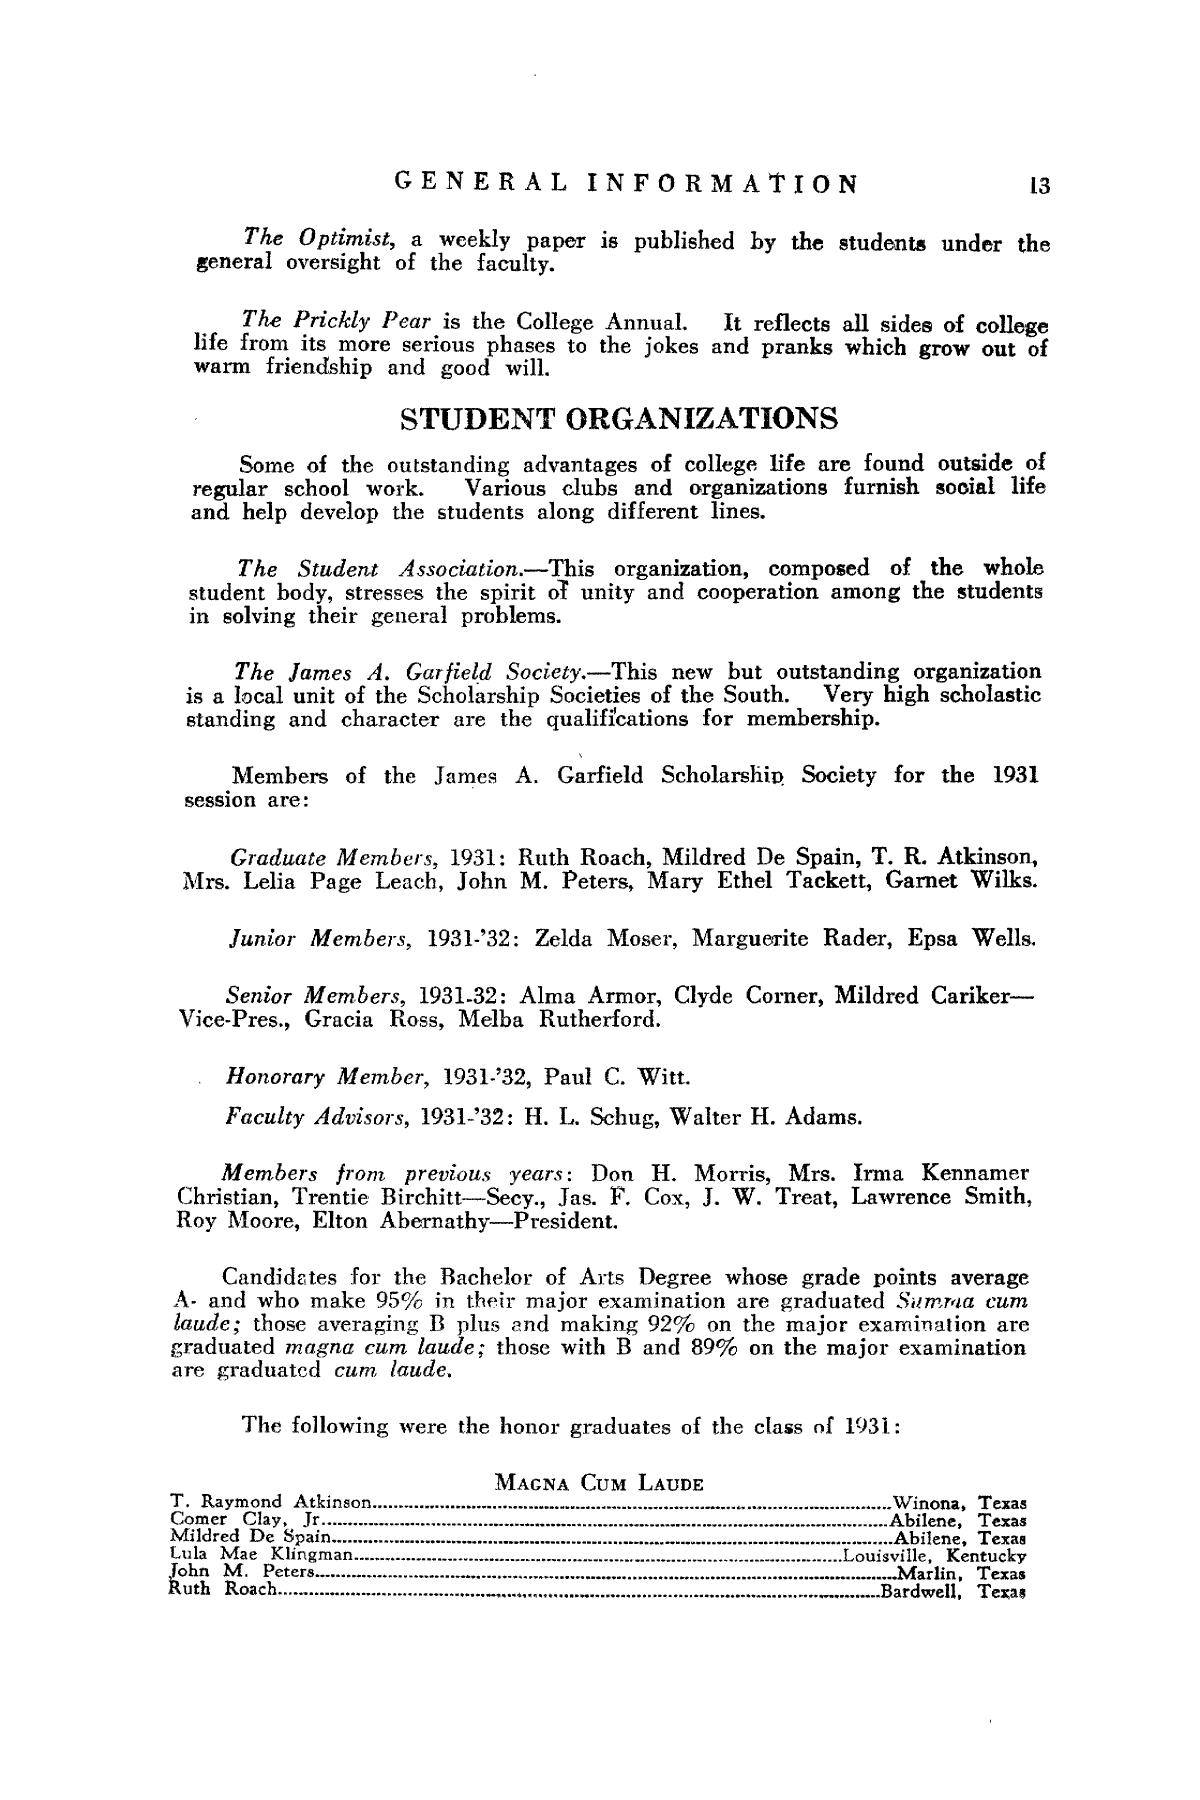 Catalog of Abilene Christian College, 1932-1933
                                                
                                                    13
                                                